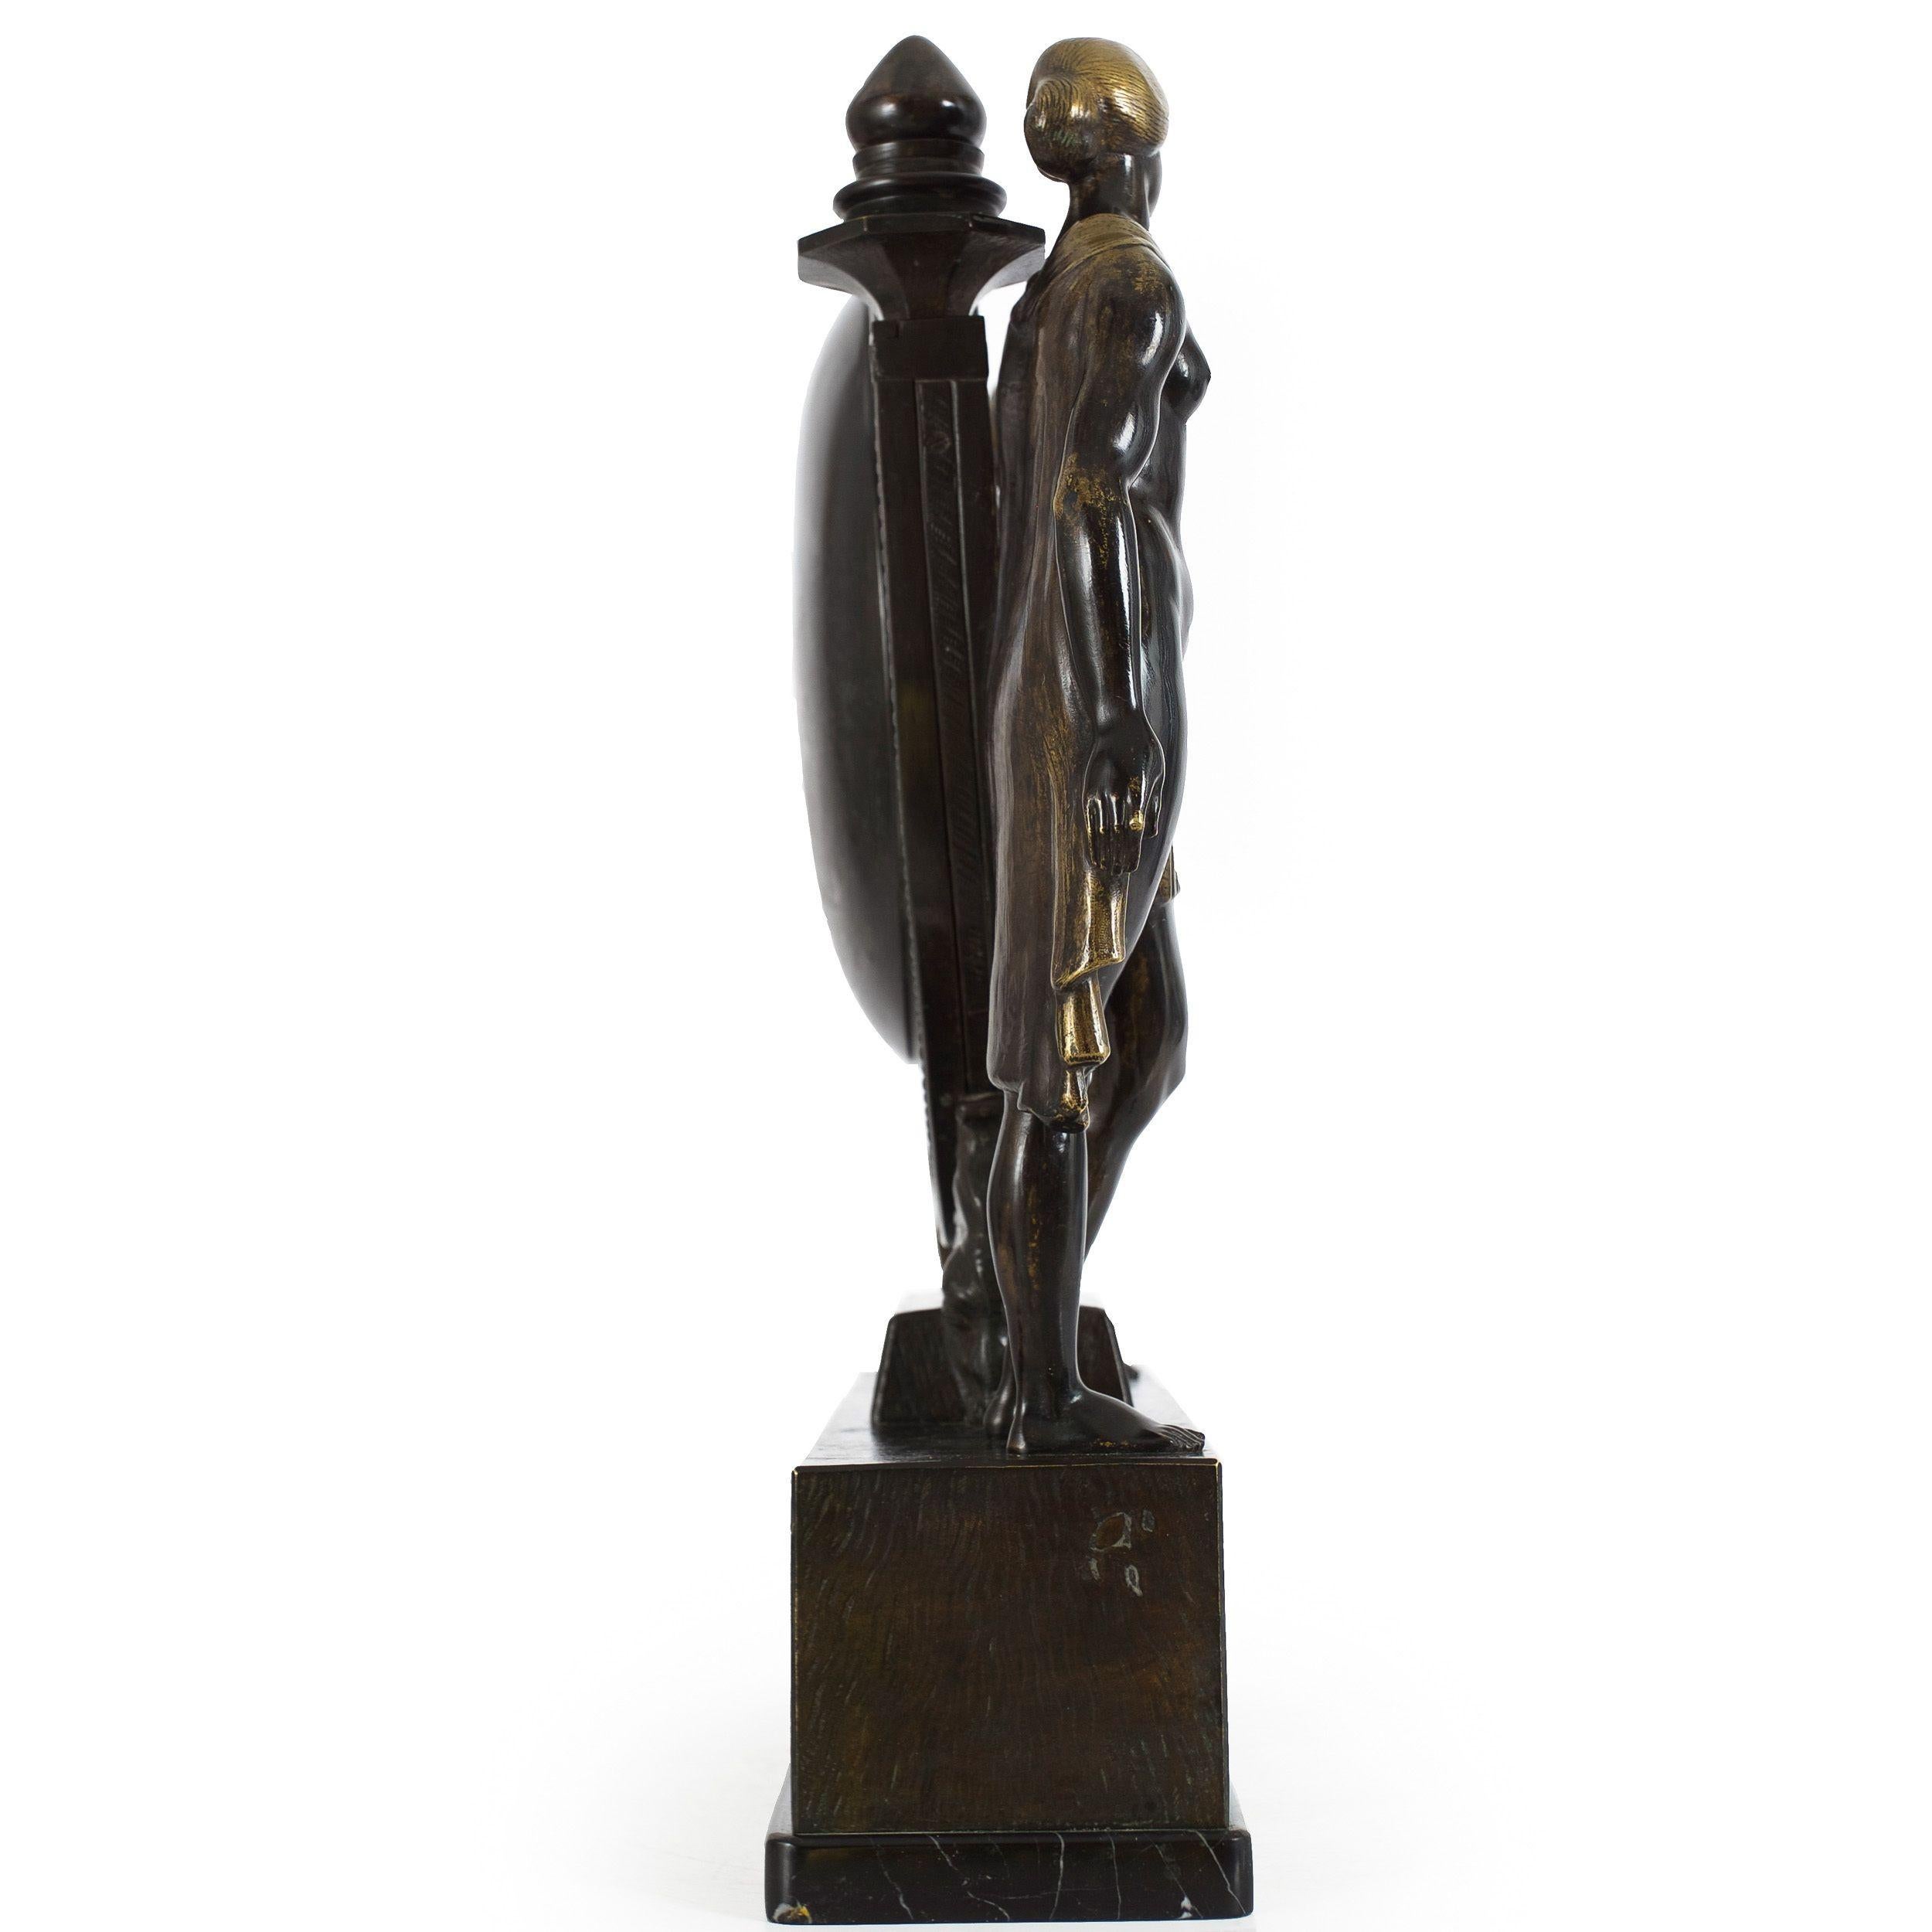 RELOJ DE SOBREMESA ART DECÓ
Anton Grath (austriaco, n. 1881)  bronce patinado y bruñido sobre mármol  firmado 